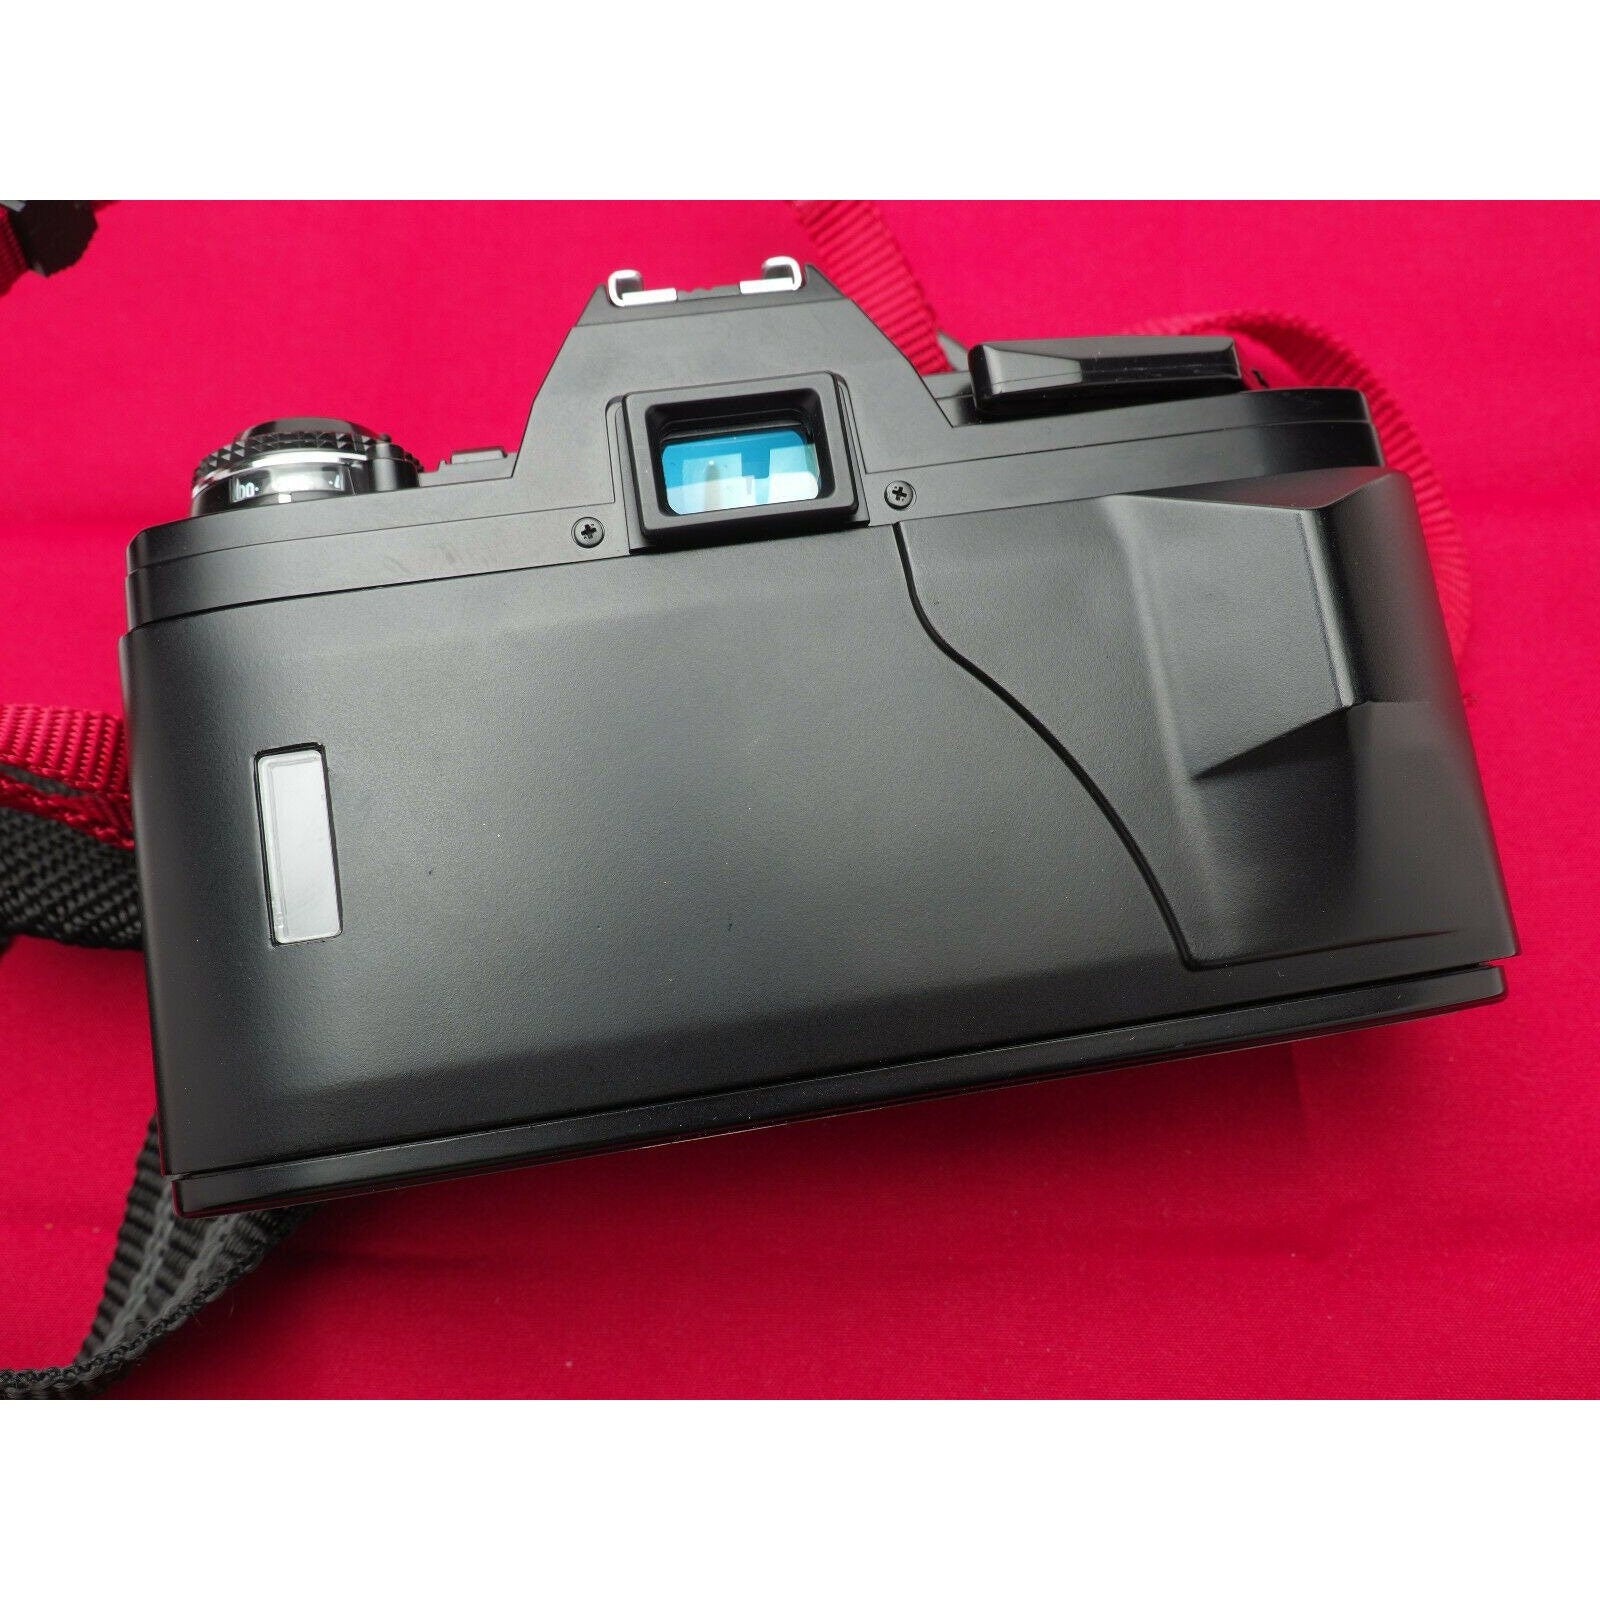 Minolta X-370 S 35mm Film SLR Camera - Black